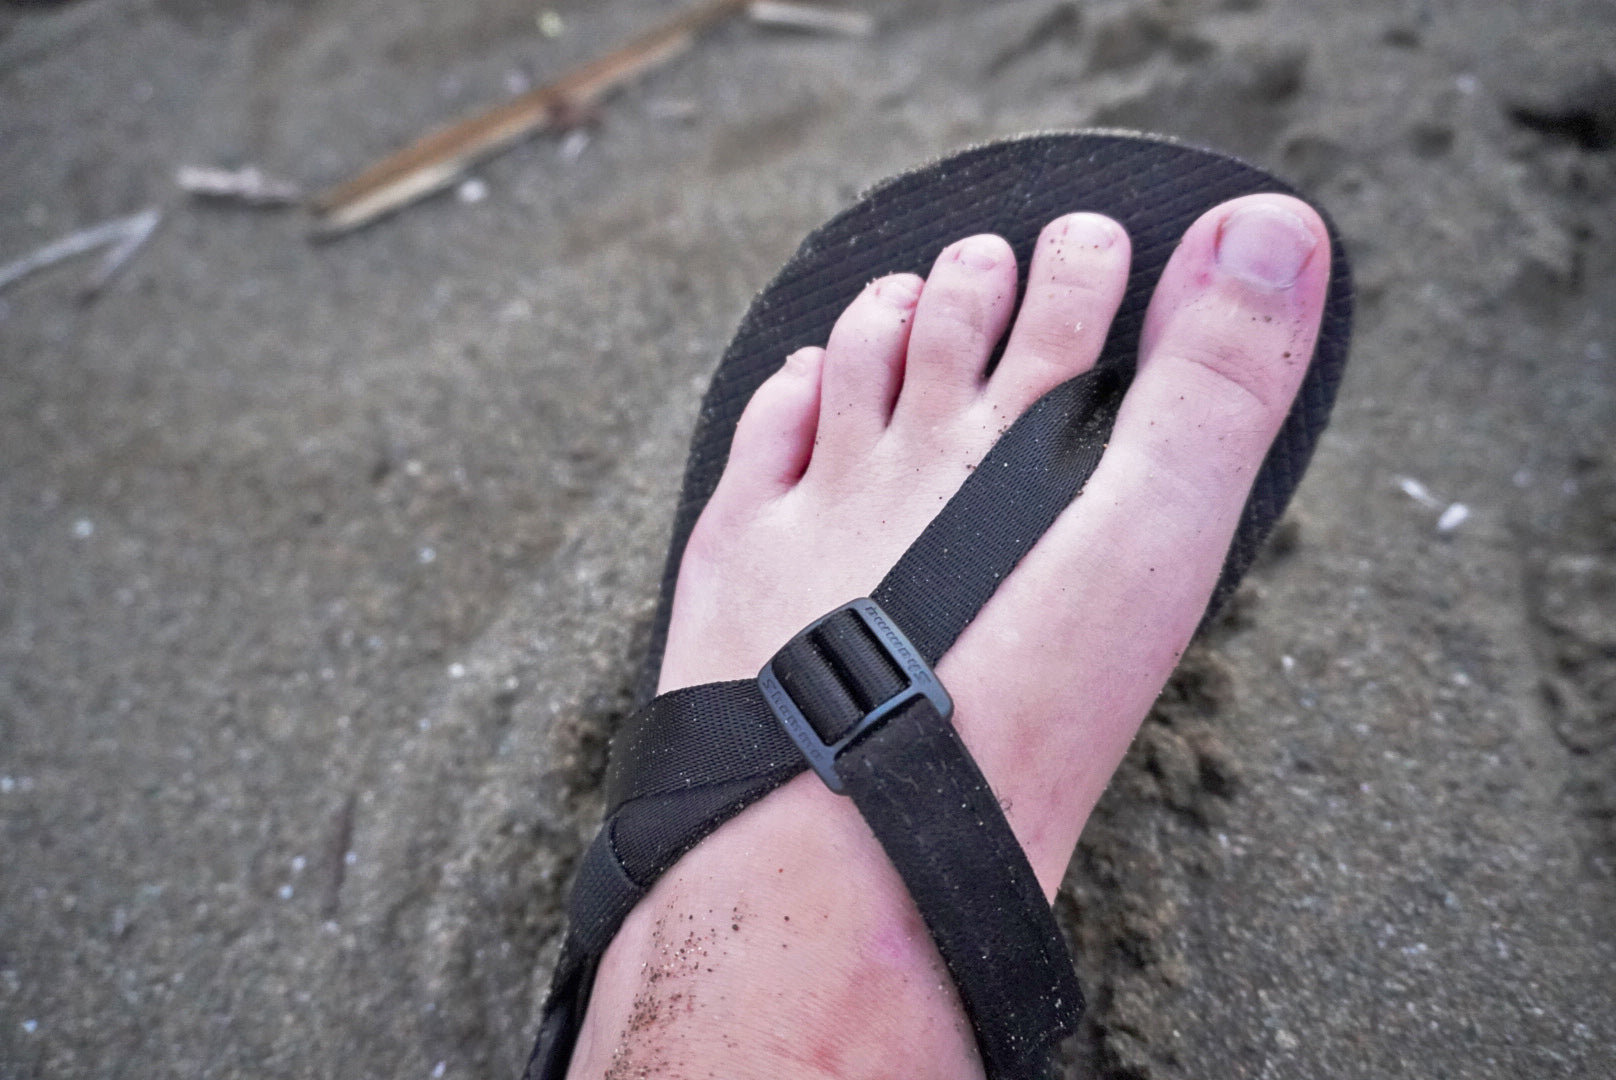 Shamma Sandals Warriors Gear Review Ultralight Lightweight Minimalist Barefoot Camp Shoe Sandal GGG Garage Grown Gear